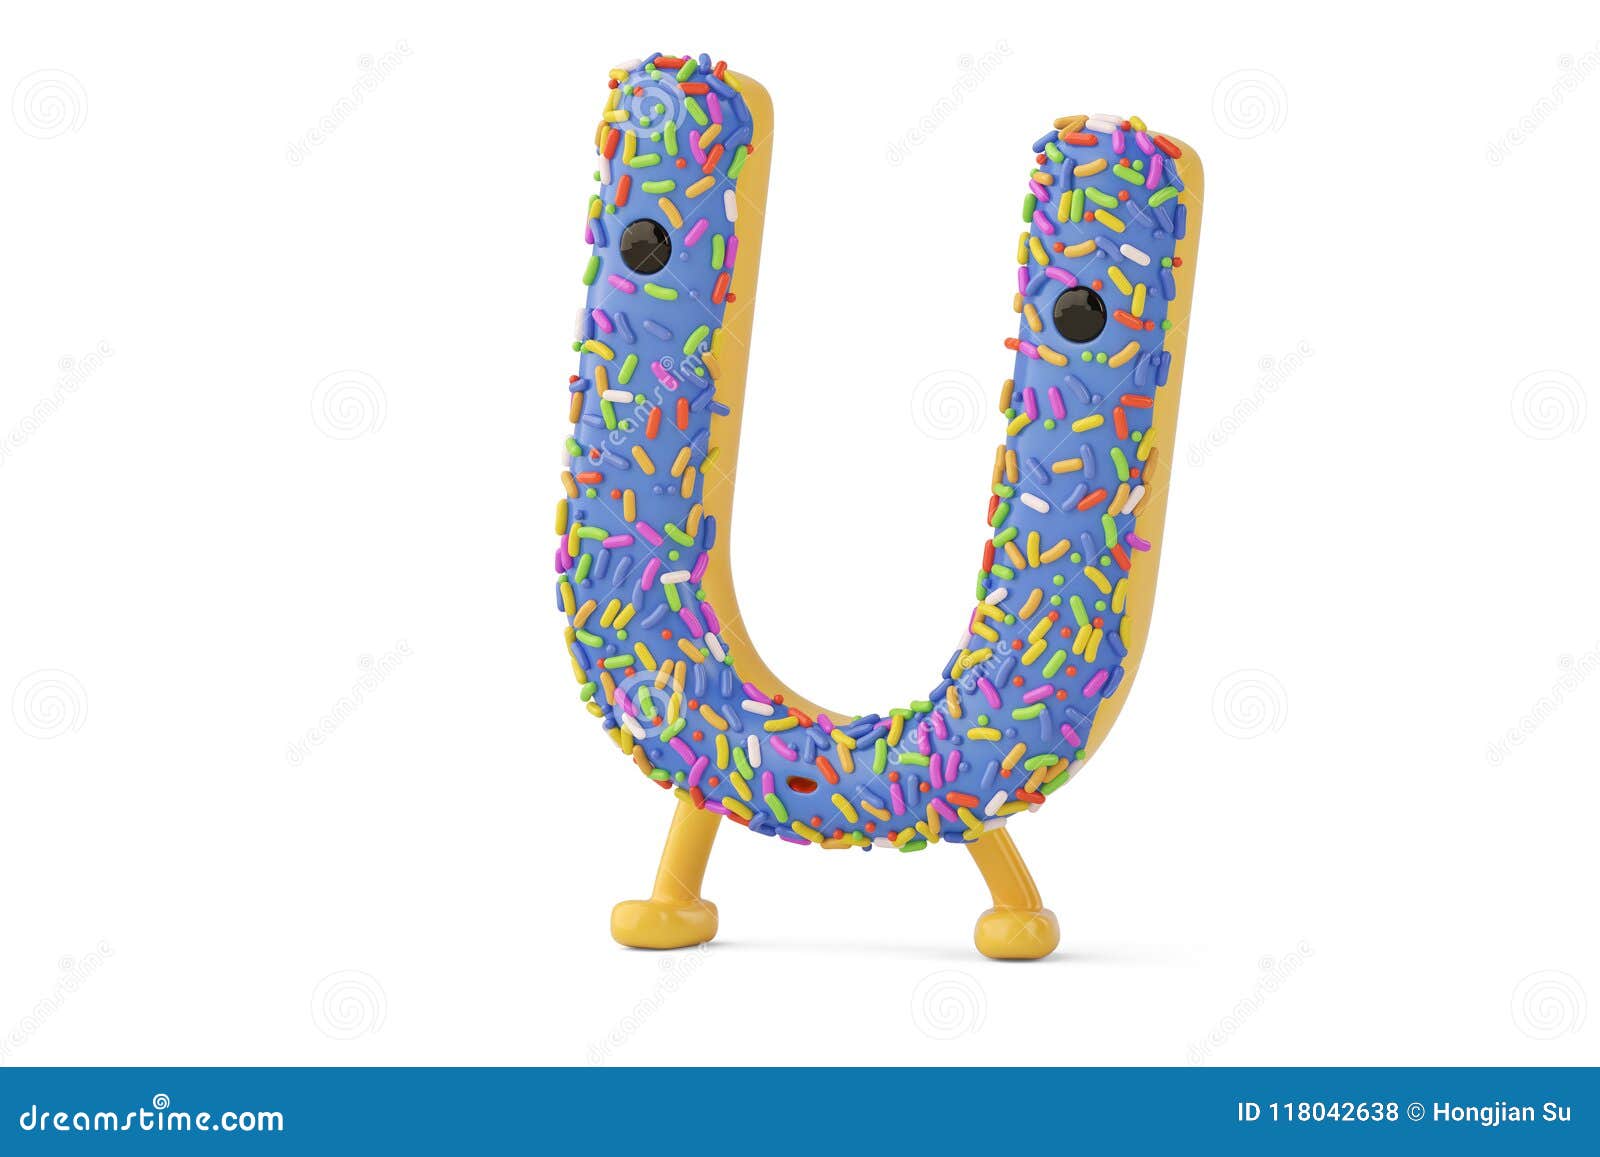 A Cartoon Donut Alphabet Letter U on White Background,3D Illustration.  Stock Illustration - Illustration of pink, font: 118042638